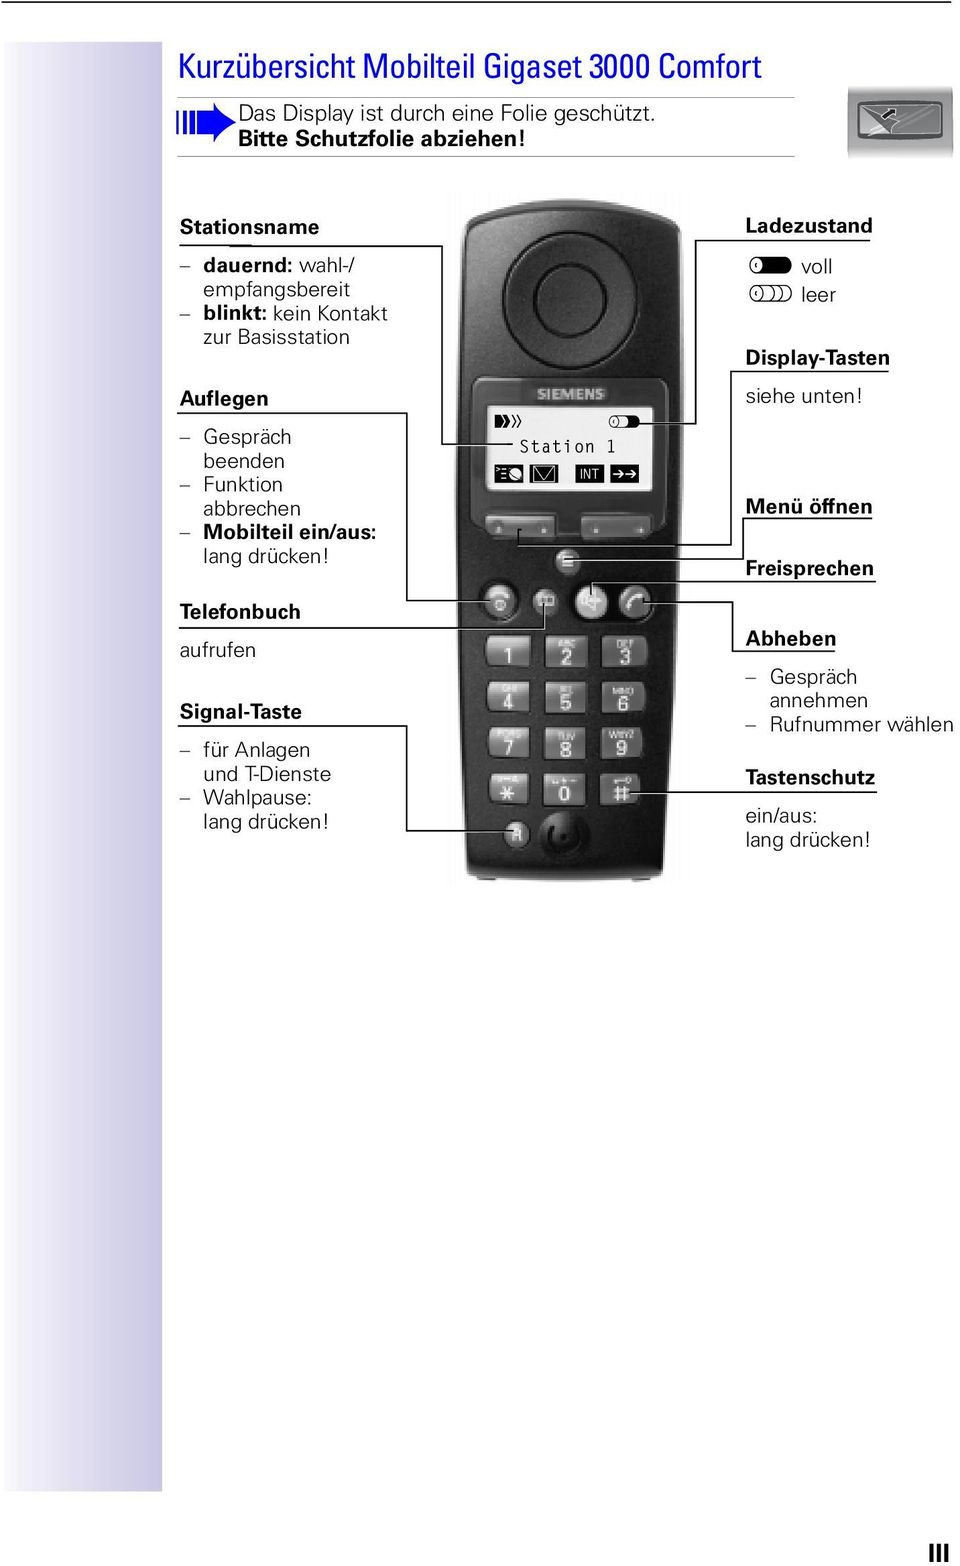 Mobilteil ein/aus: lang drücken! Telefonbuch aufrufen Signal-Taste Anlagen und T-Dienste Wahlpause: lang drücken! 8 CdQdY_^!